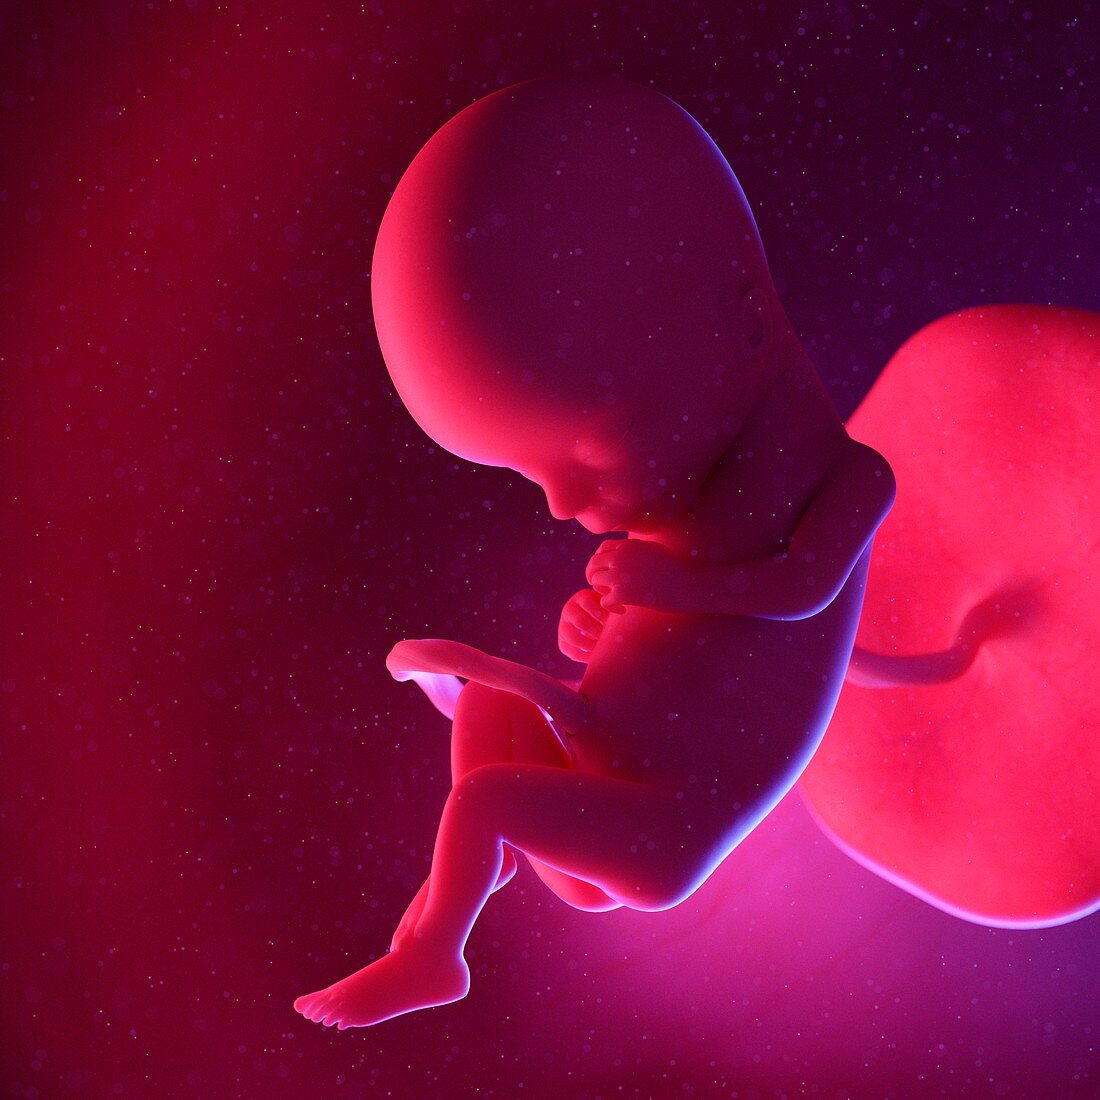 Fetus, illustration